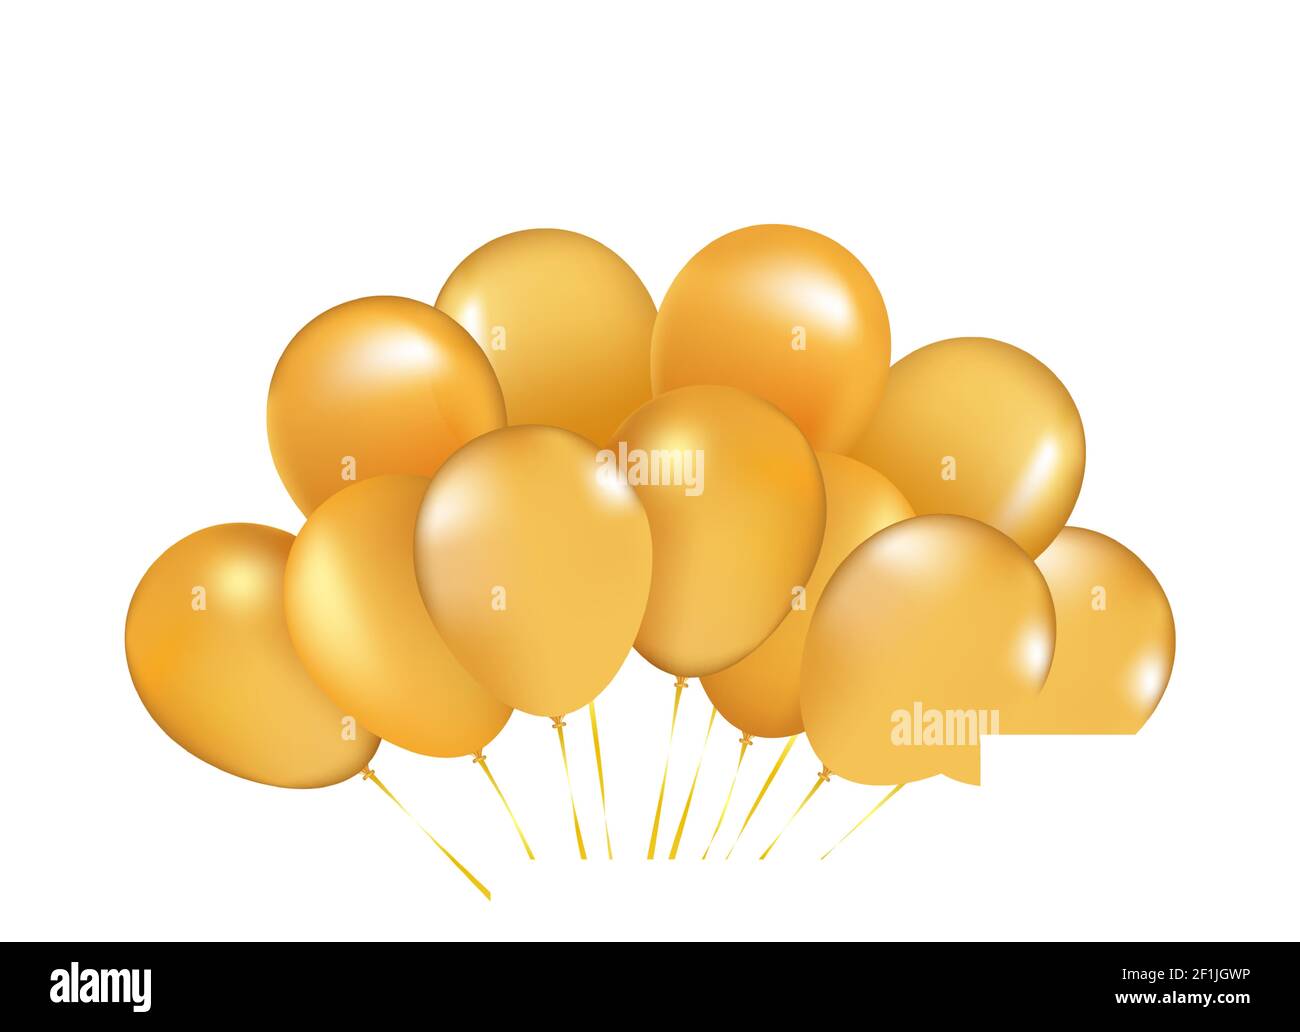 Carte D'anniversaire Avec Ballons De Luxe Et Ruban D'or. Style